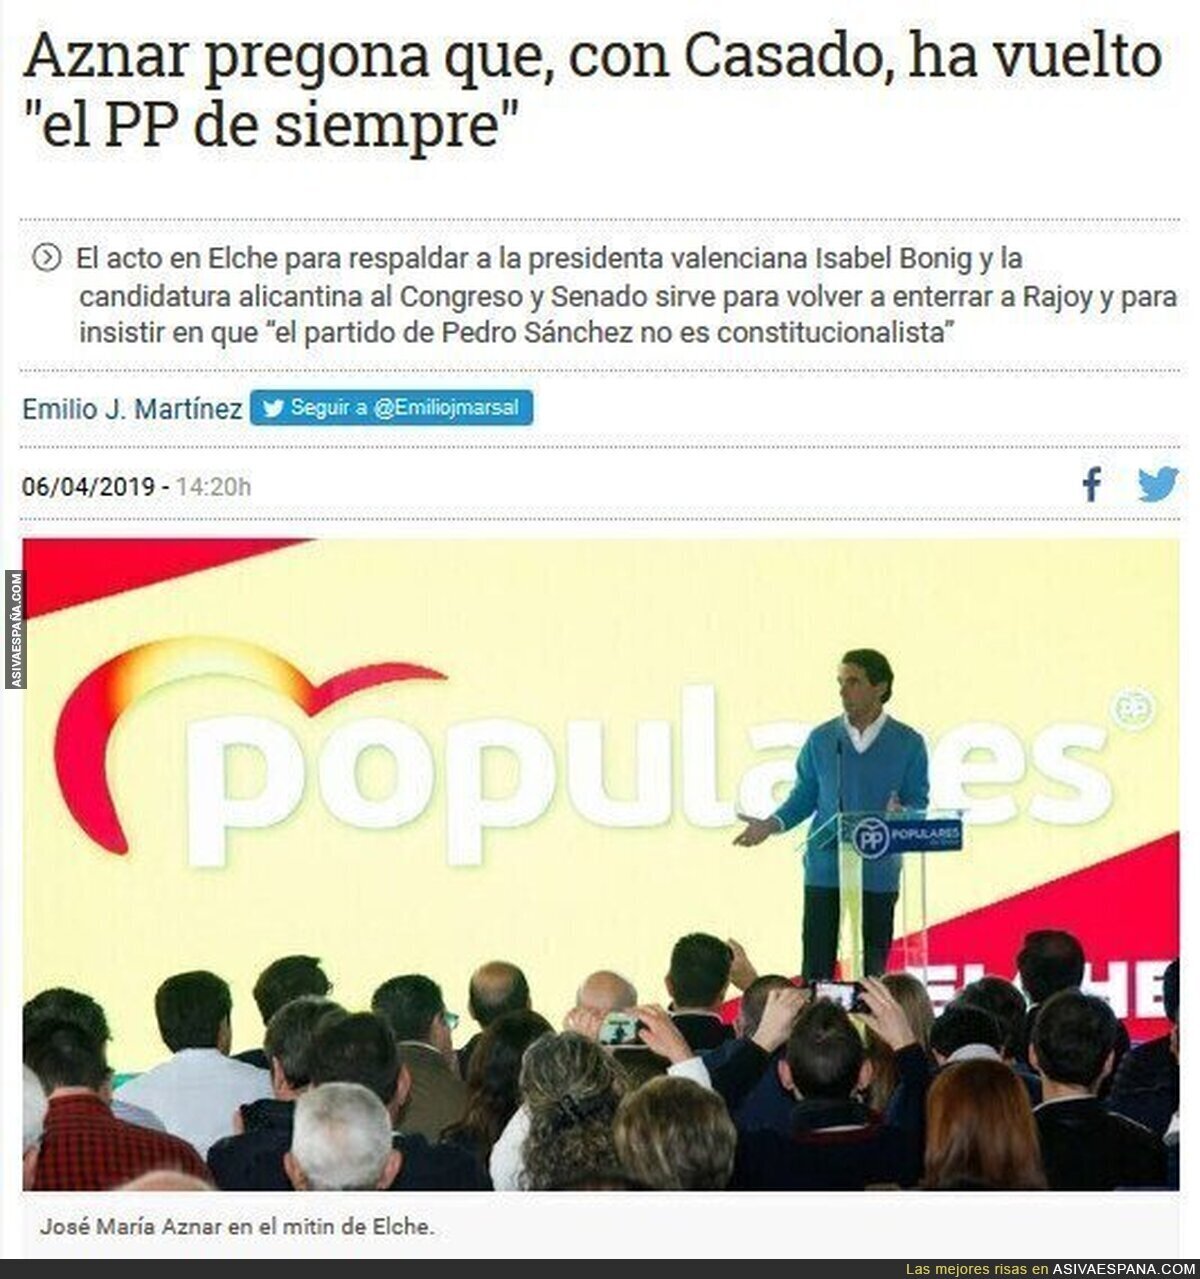 Aznar reconoce que siguen siendo la misma cosa corrupta